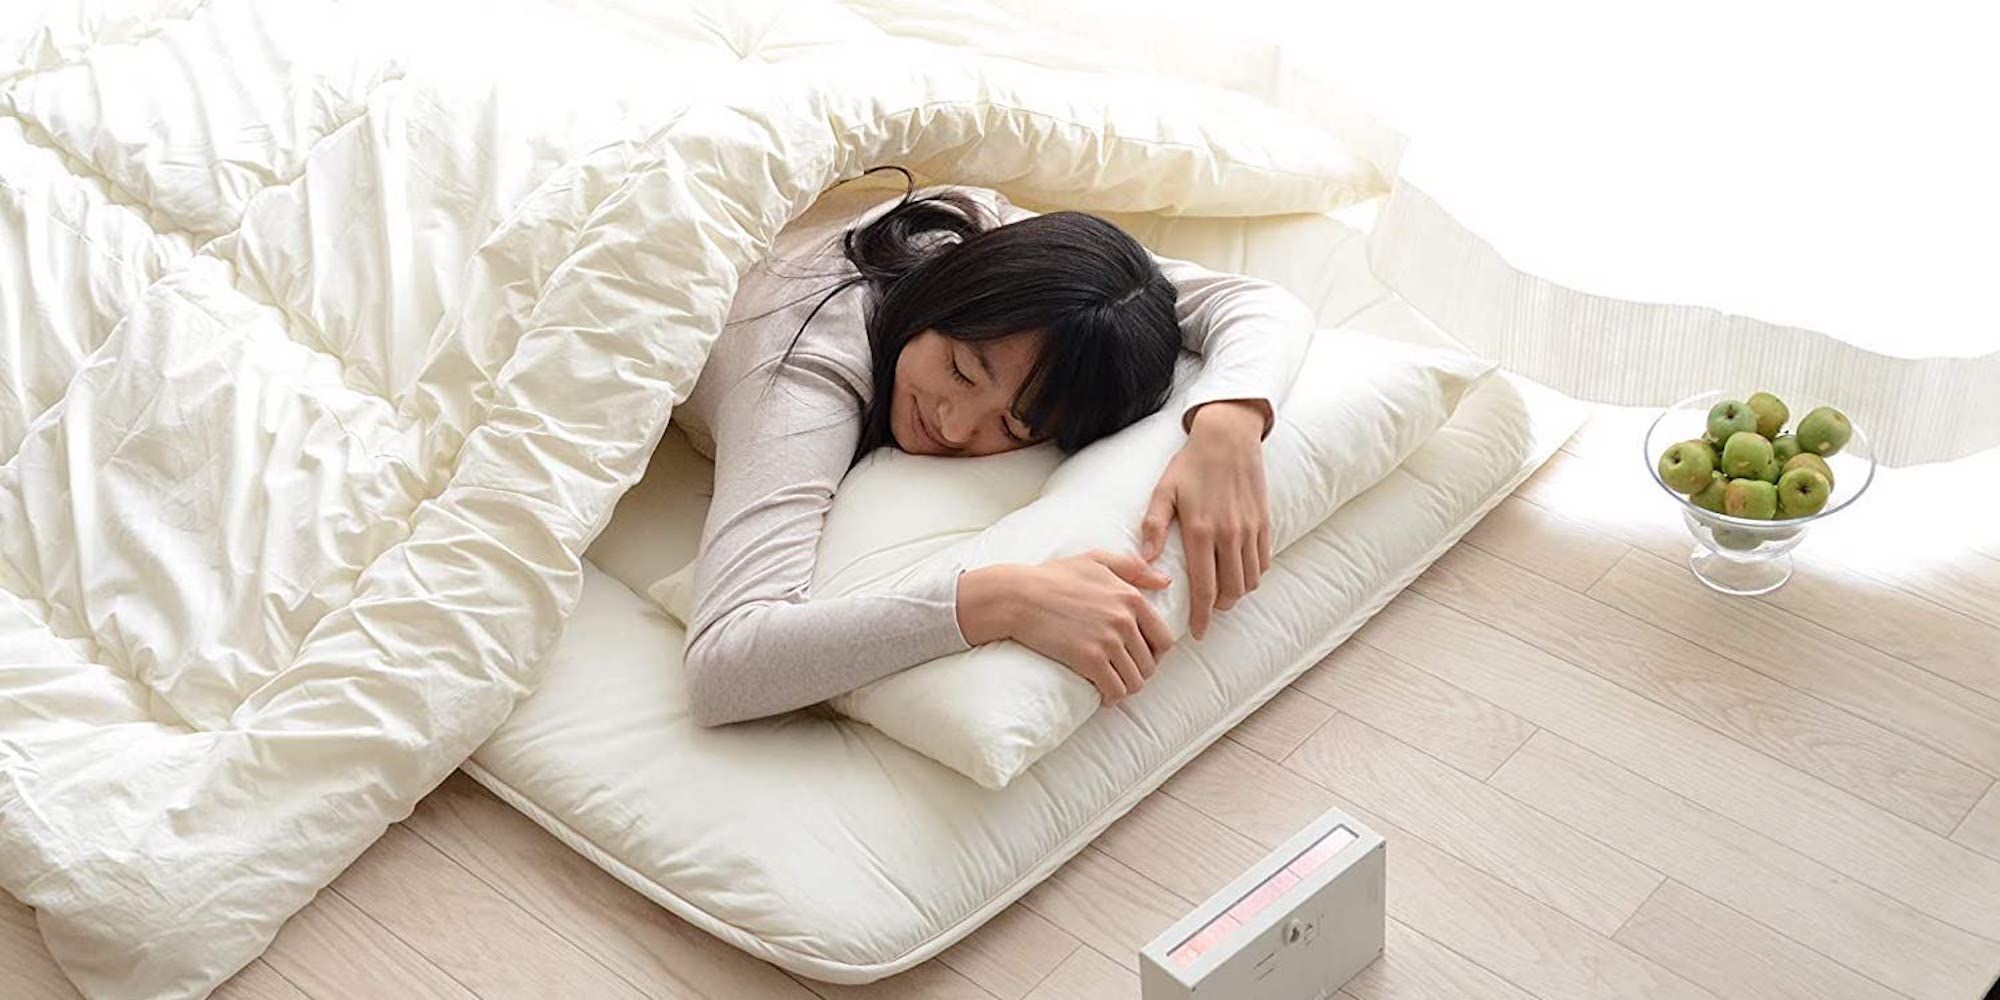 Nệm futon Nhật Bản – có thể là lựa chọn bạn đang tìm kiếm 2